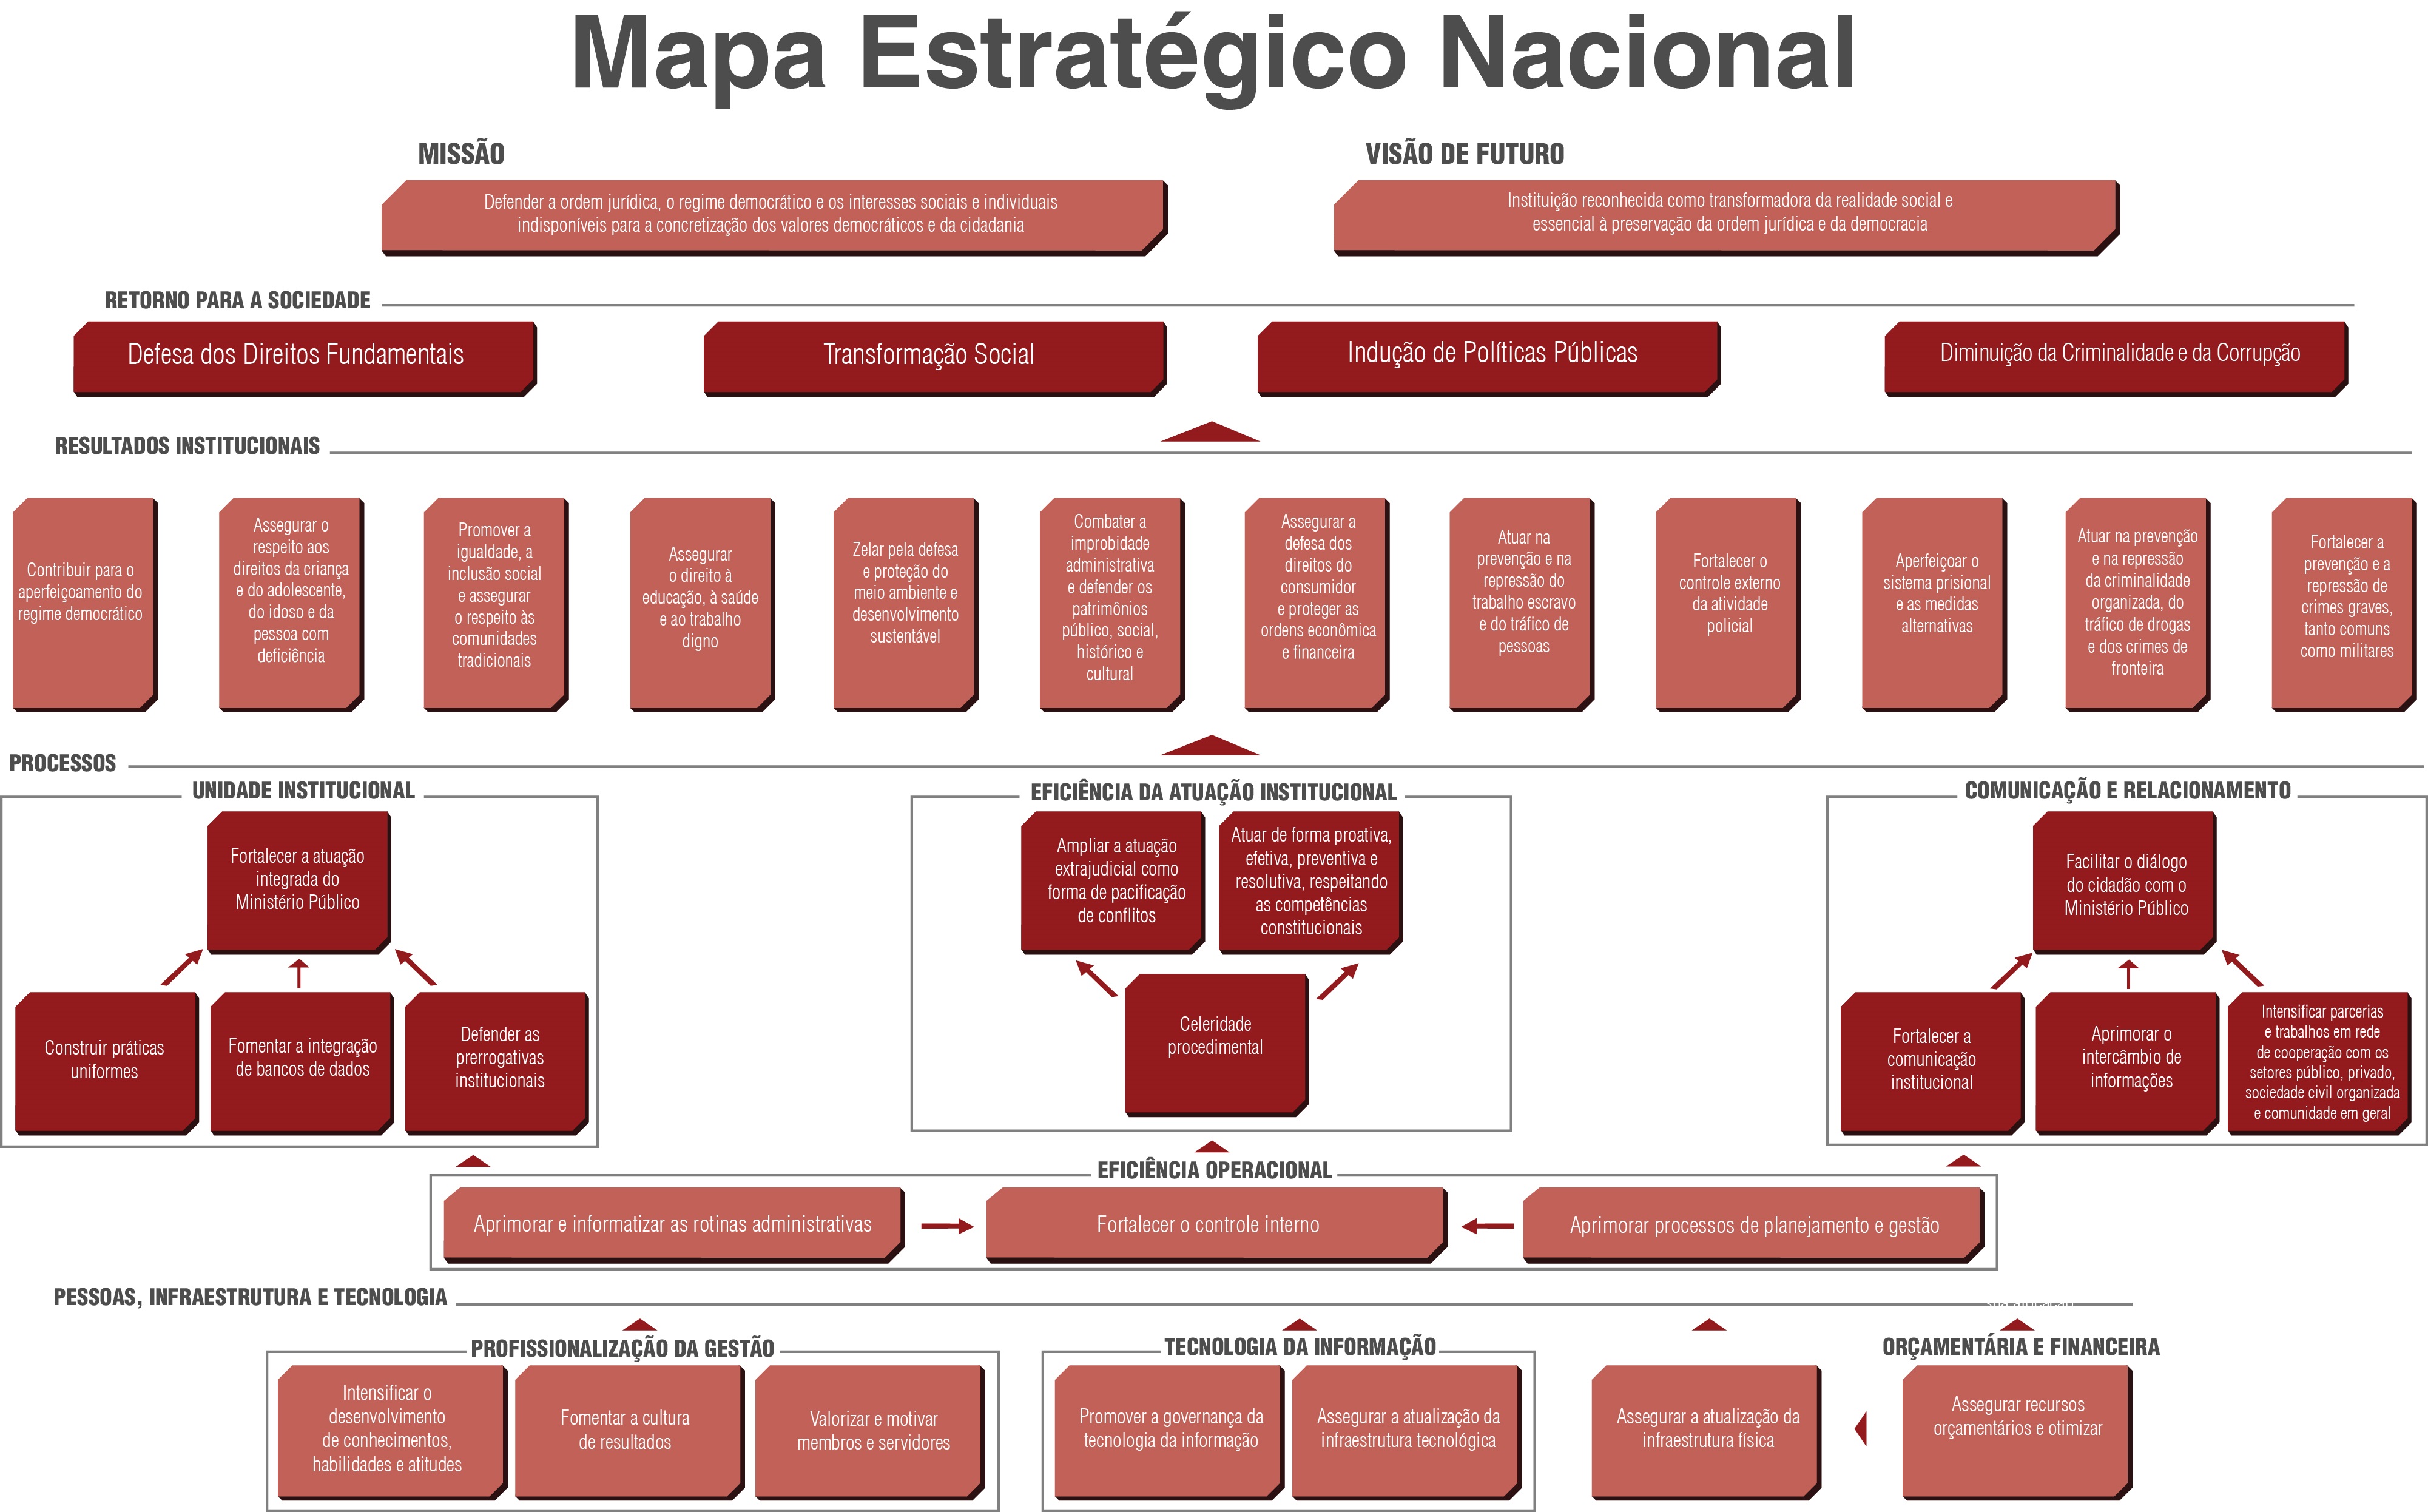 PEN-MP_Mapa_Estratégico_Nacional.jpg - 1,29 MB